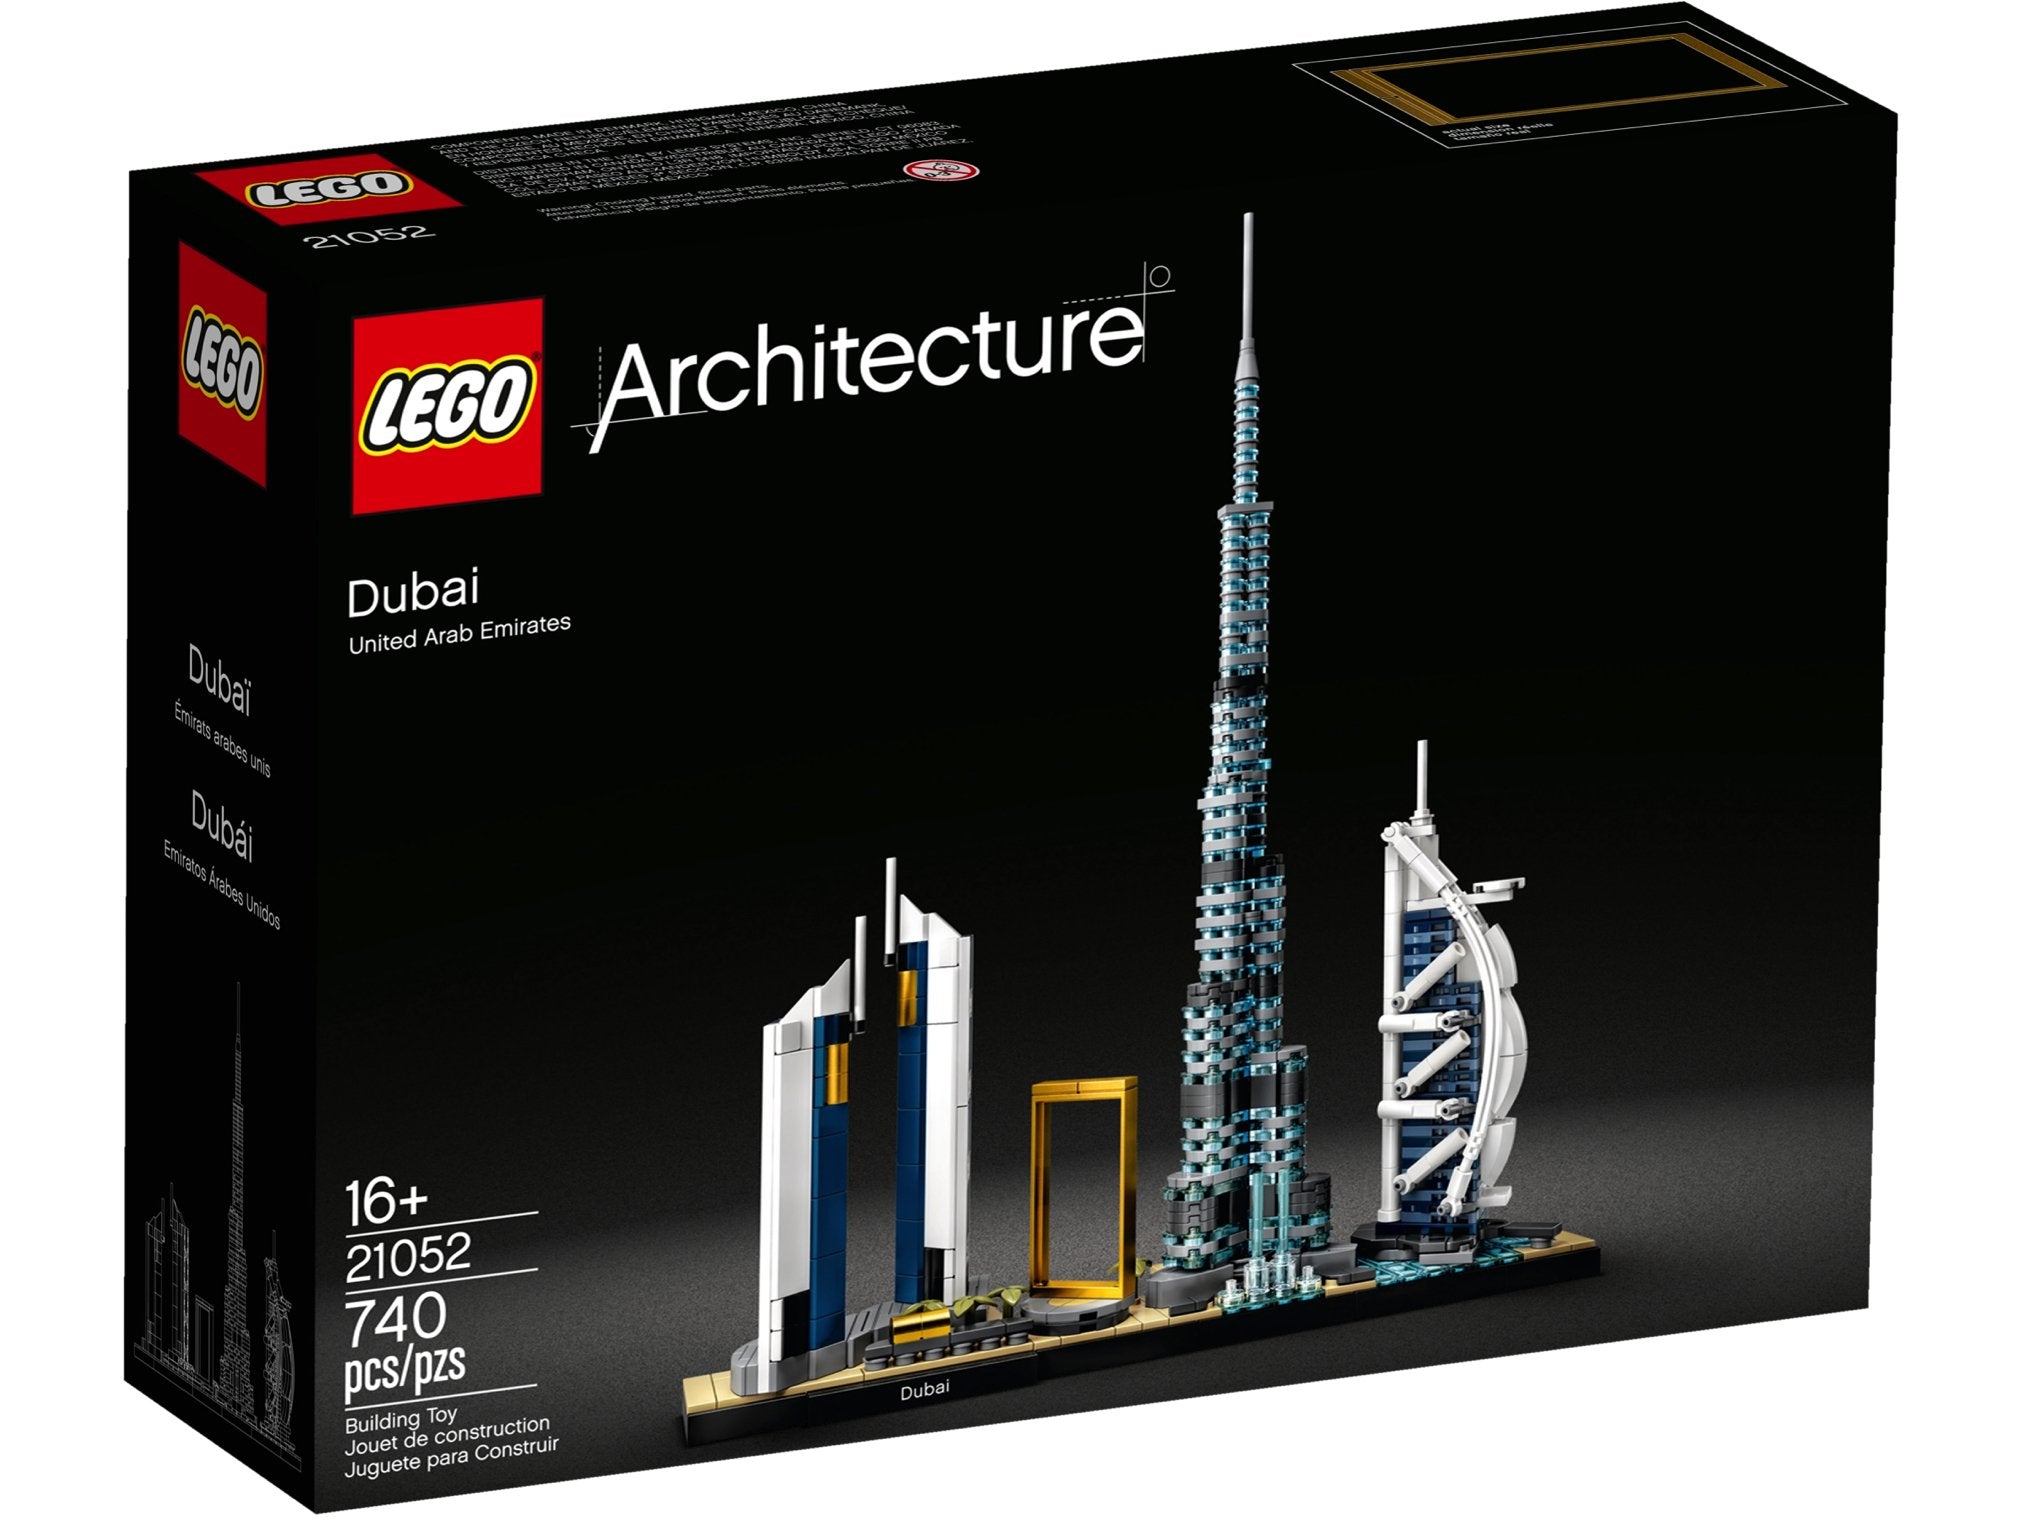 LEGO Architecture Dubai (21052) - im GOLDSTIEN.SHOP verfügbar mit Gratisversand ab Schweizer Lager! (5702016617344)